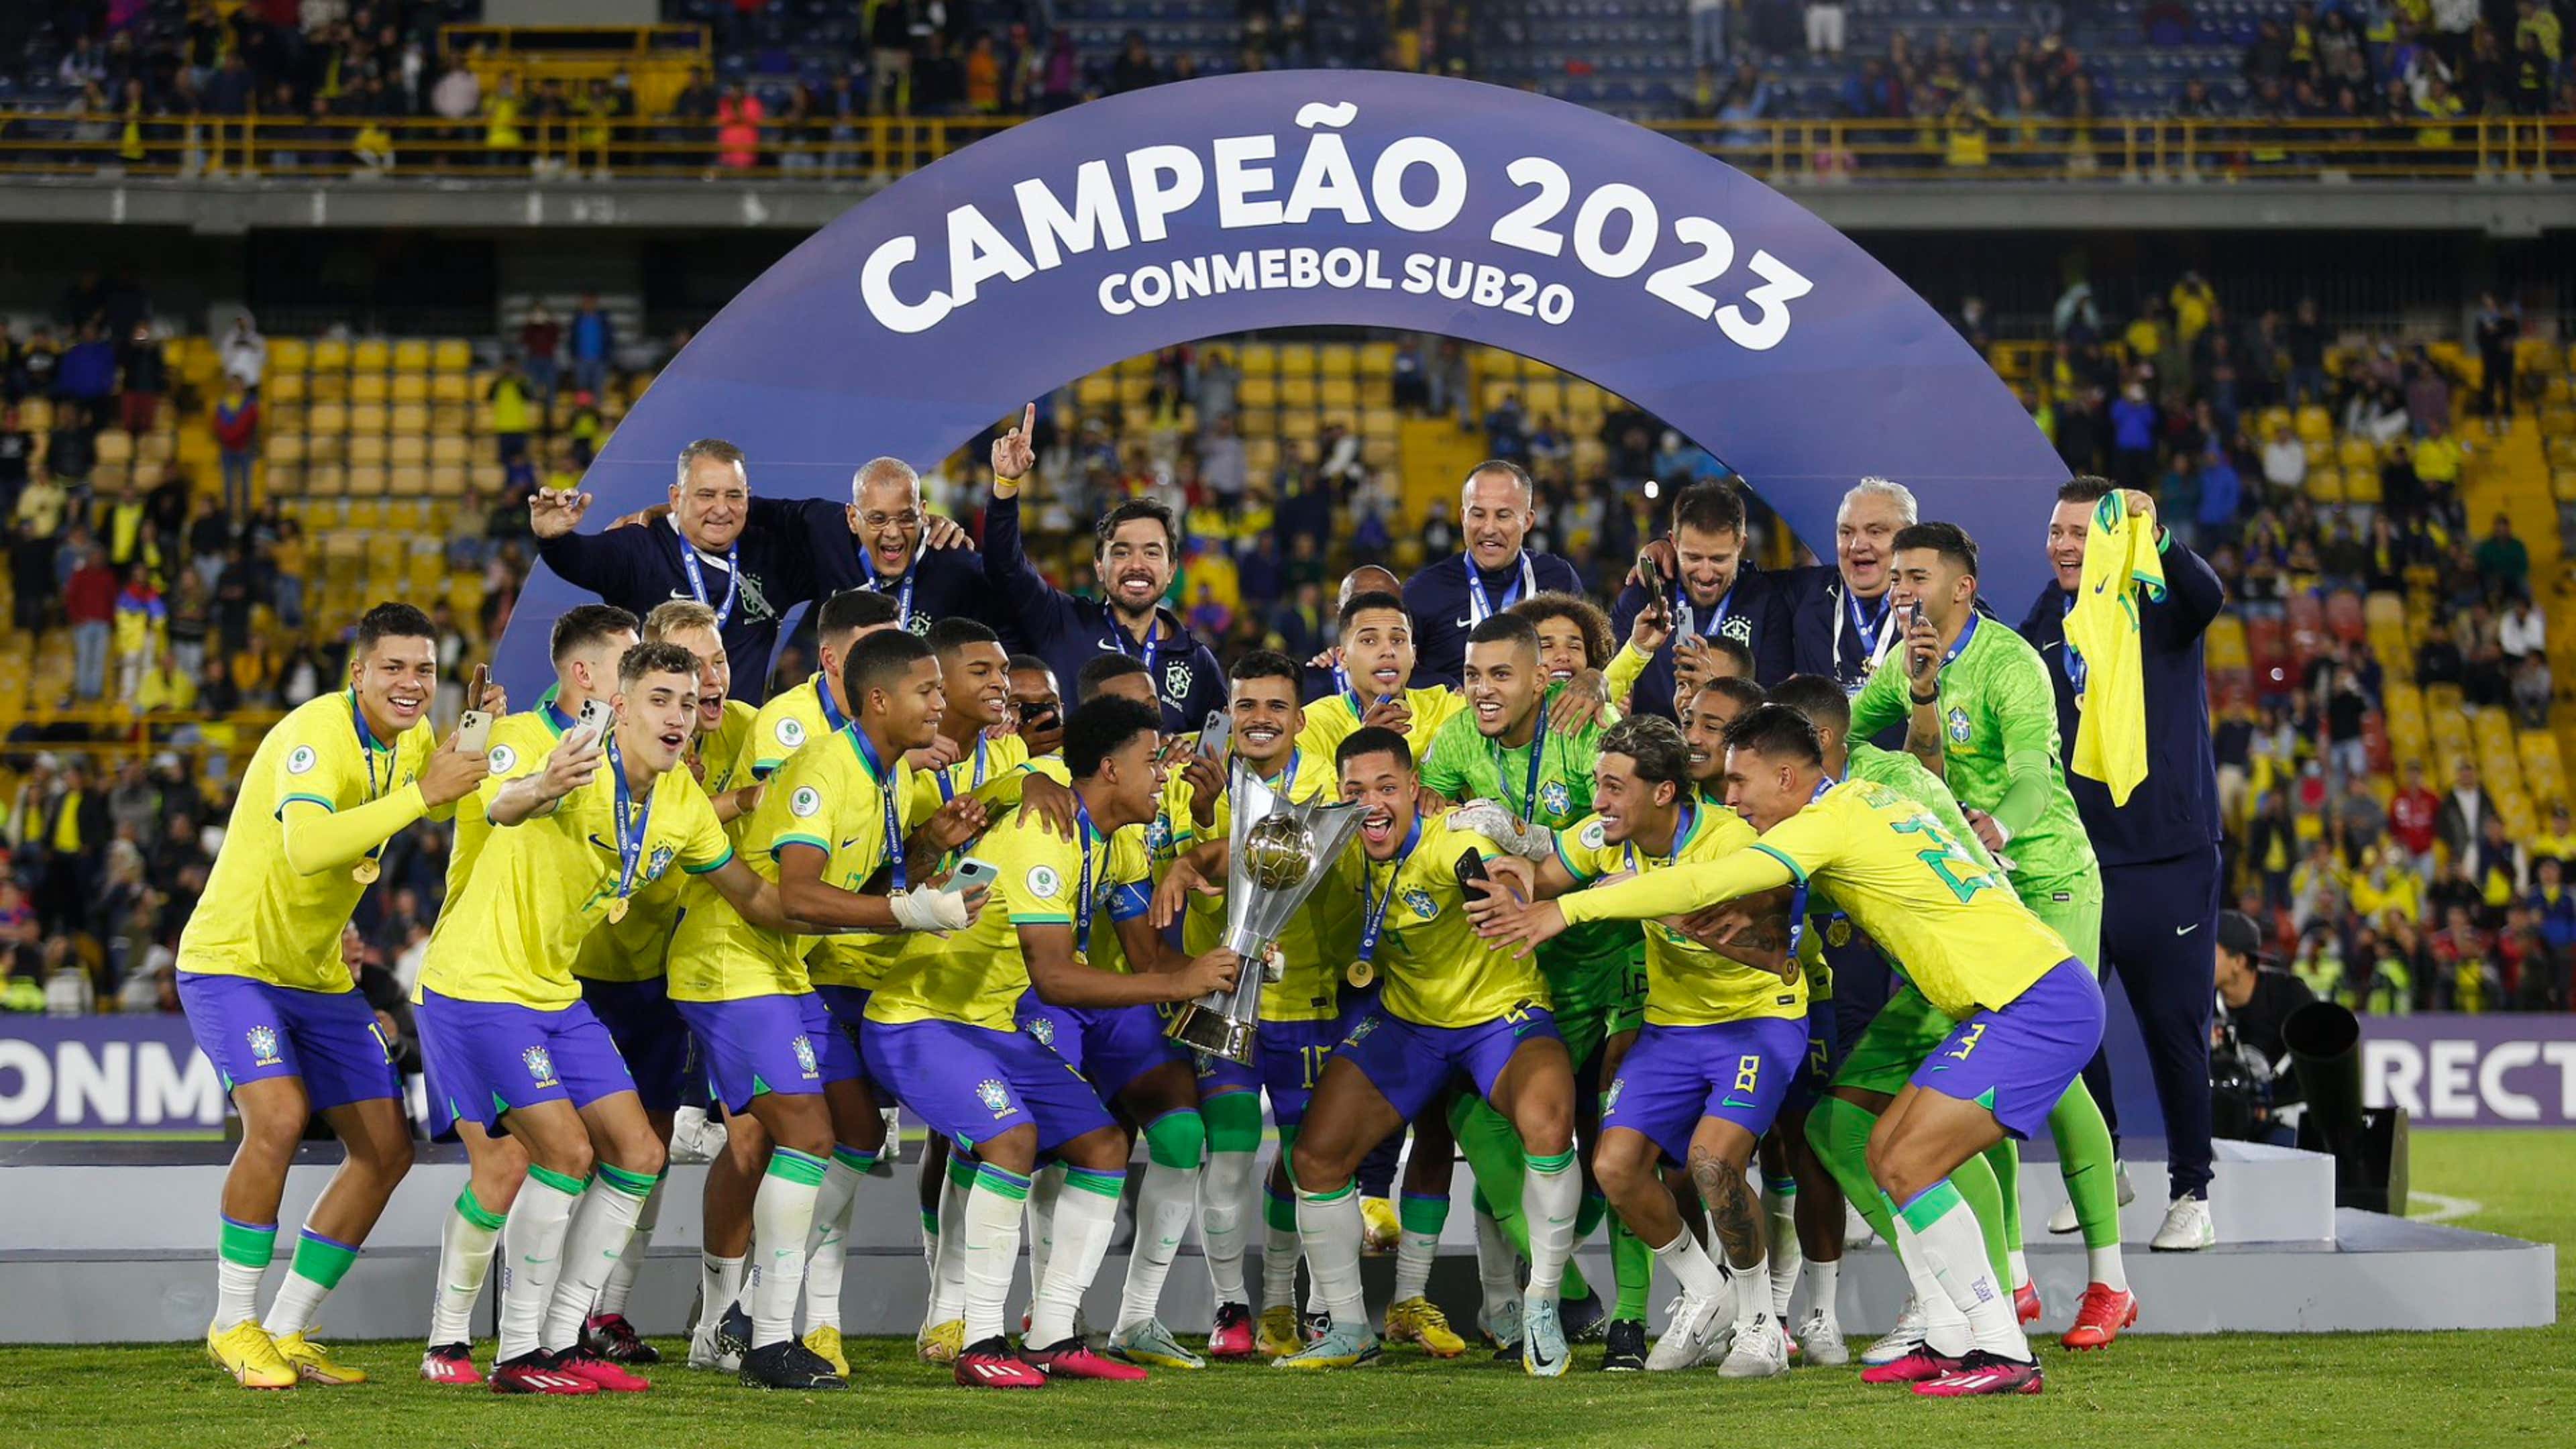 Último time sul-americano campeão mundial passando para desejar